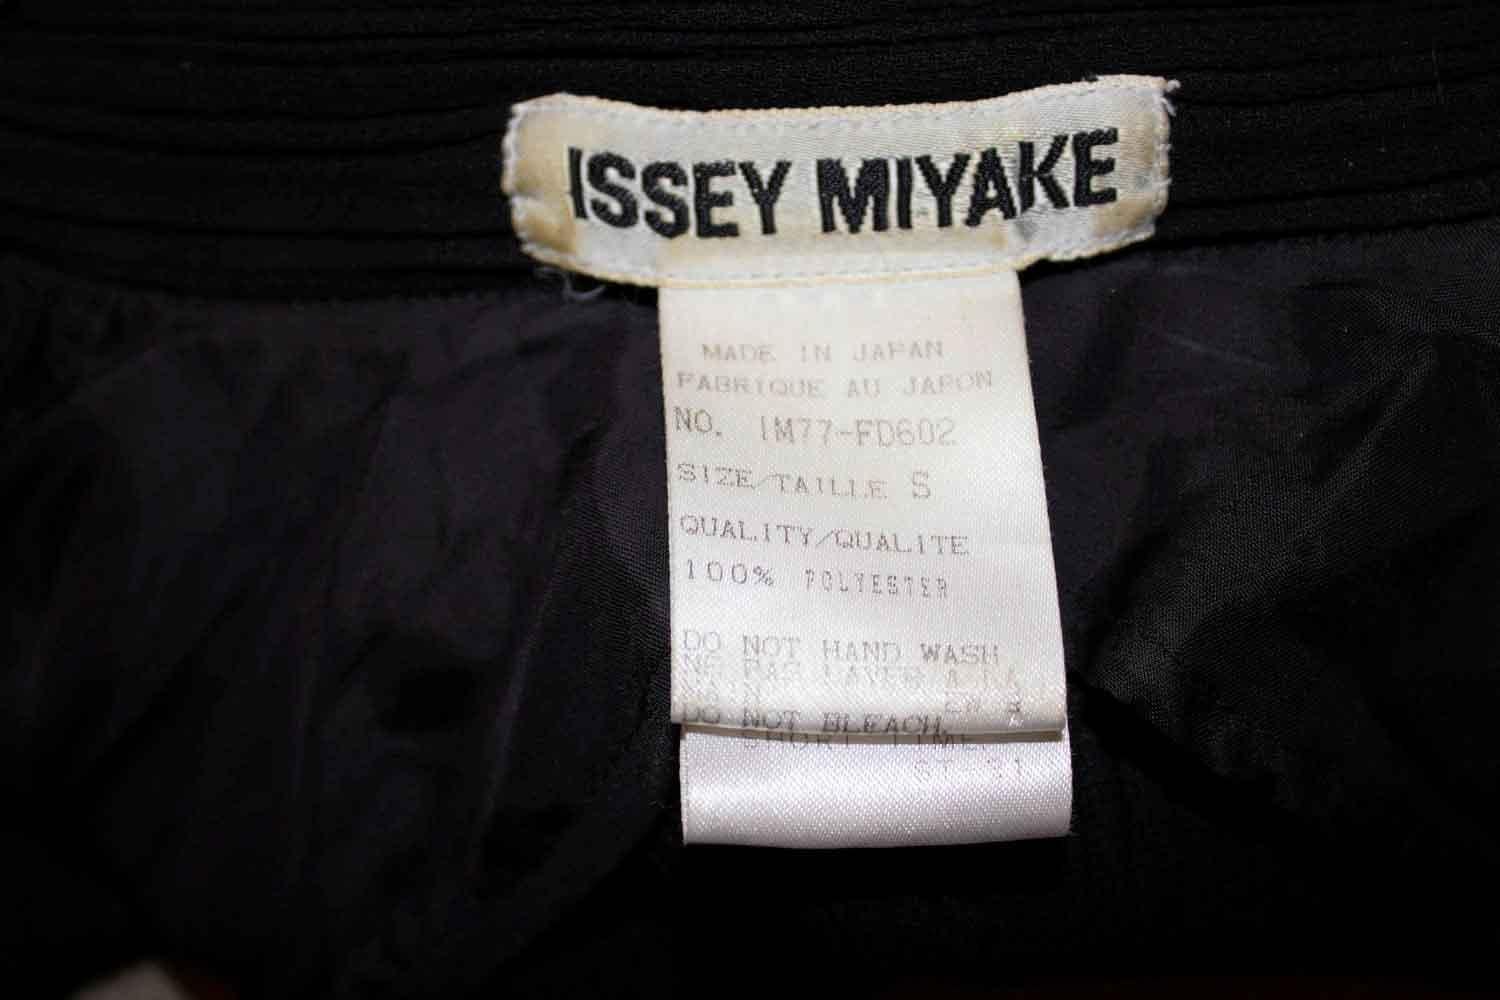 Eine tolle Jacke von Issey Miyake, Hauptlinie... Größe S , IM77 FD602 Die Jacke hat einen 5-Knopf-Verschluss, mit einer Tasche auf jeder Seite, mit einem Knopf auf jeder Tasche. Der Kragen, die Taschen und der Saum sind schwarz abgesetzt. Messungen 